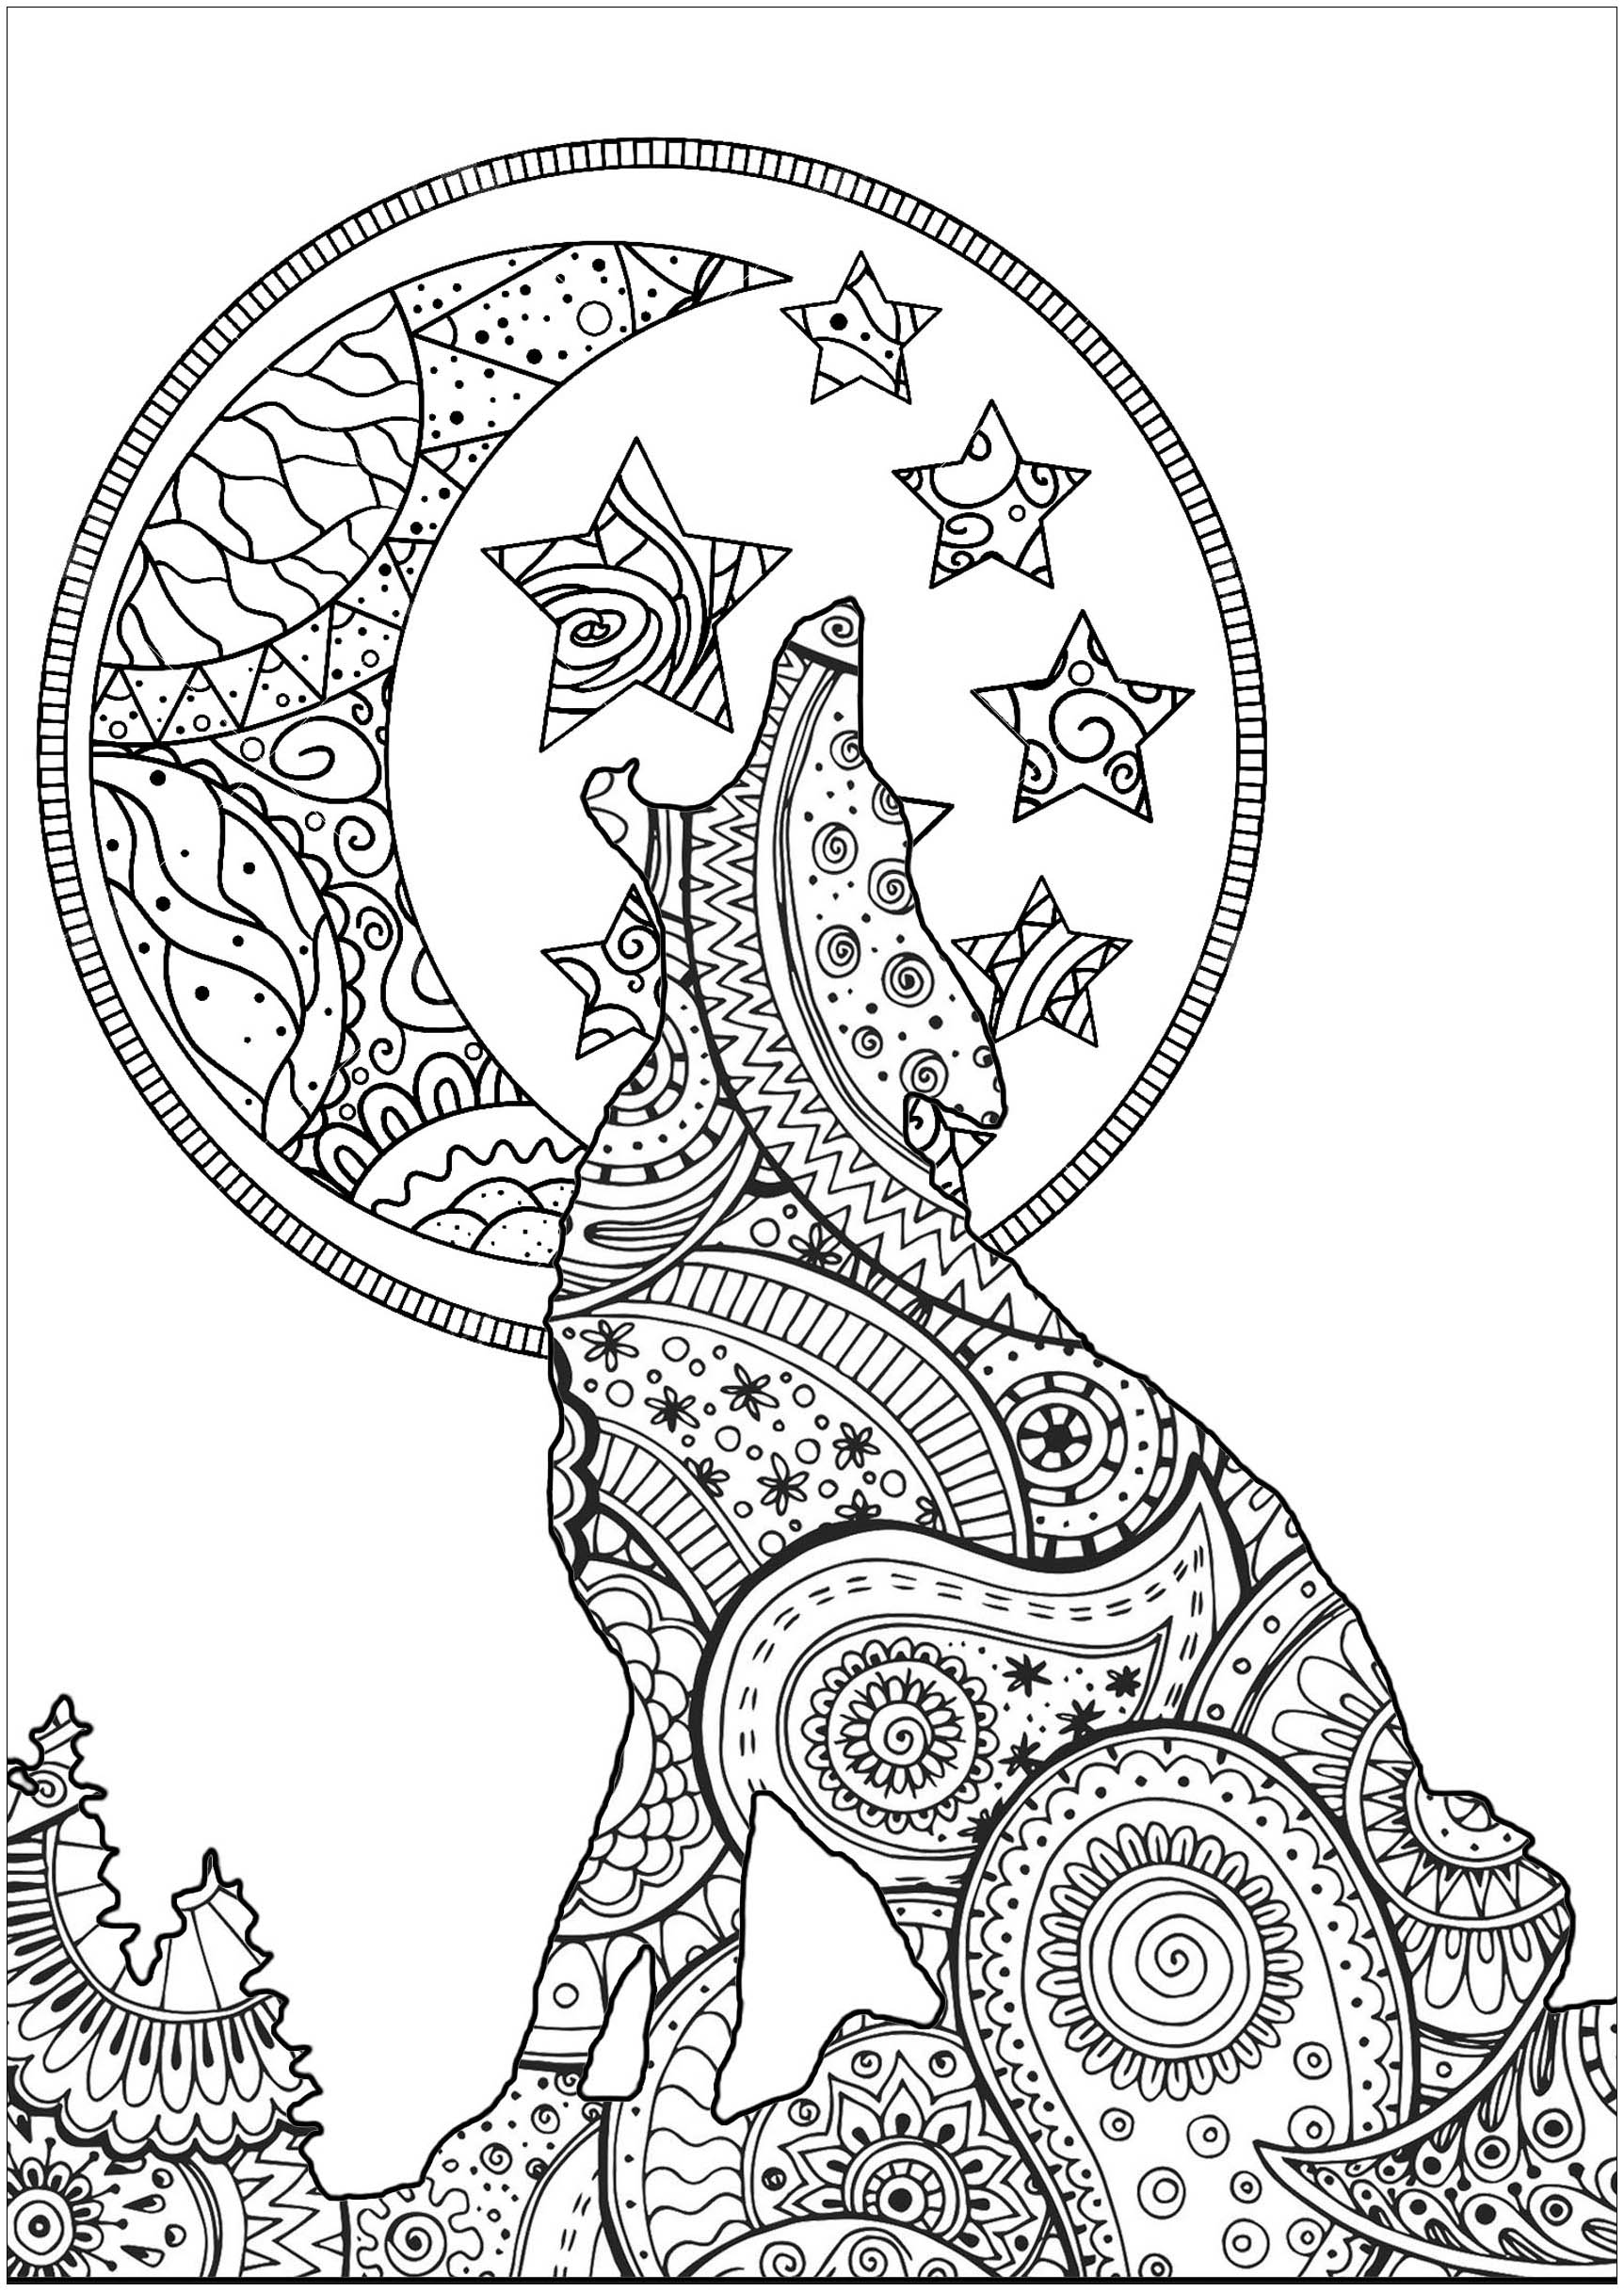 Hübsche Silhouette des Mondscheinwolfs, mit Mustern, die Zentangle- und Paisley-Formen mischen, Künstler : Art'Isabelle